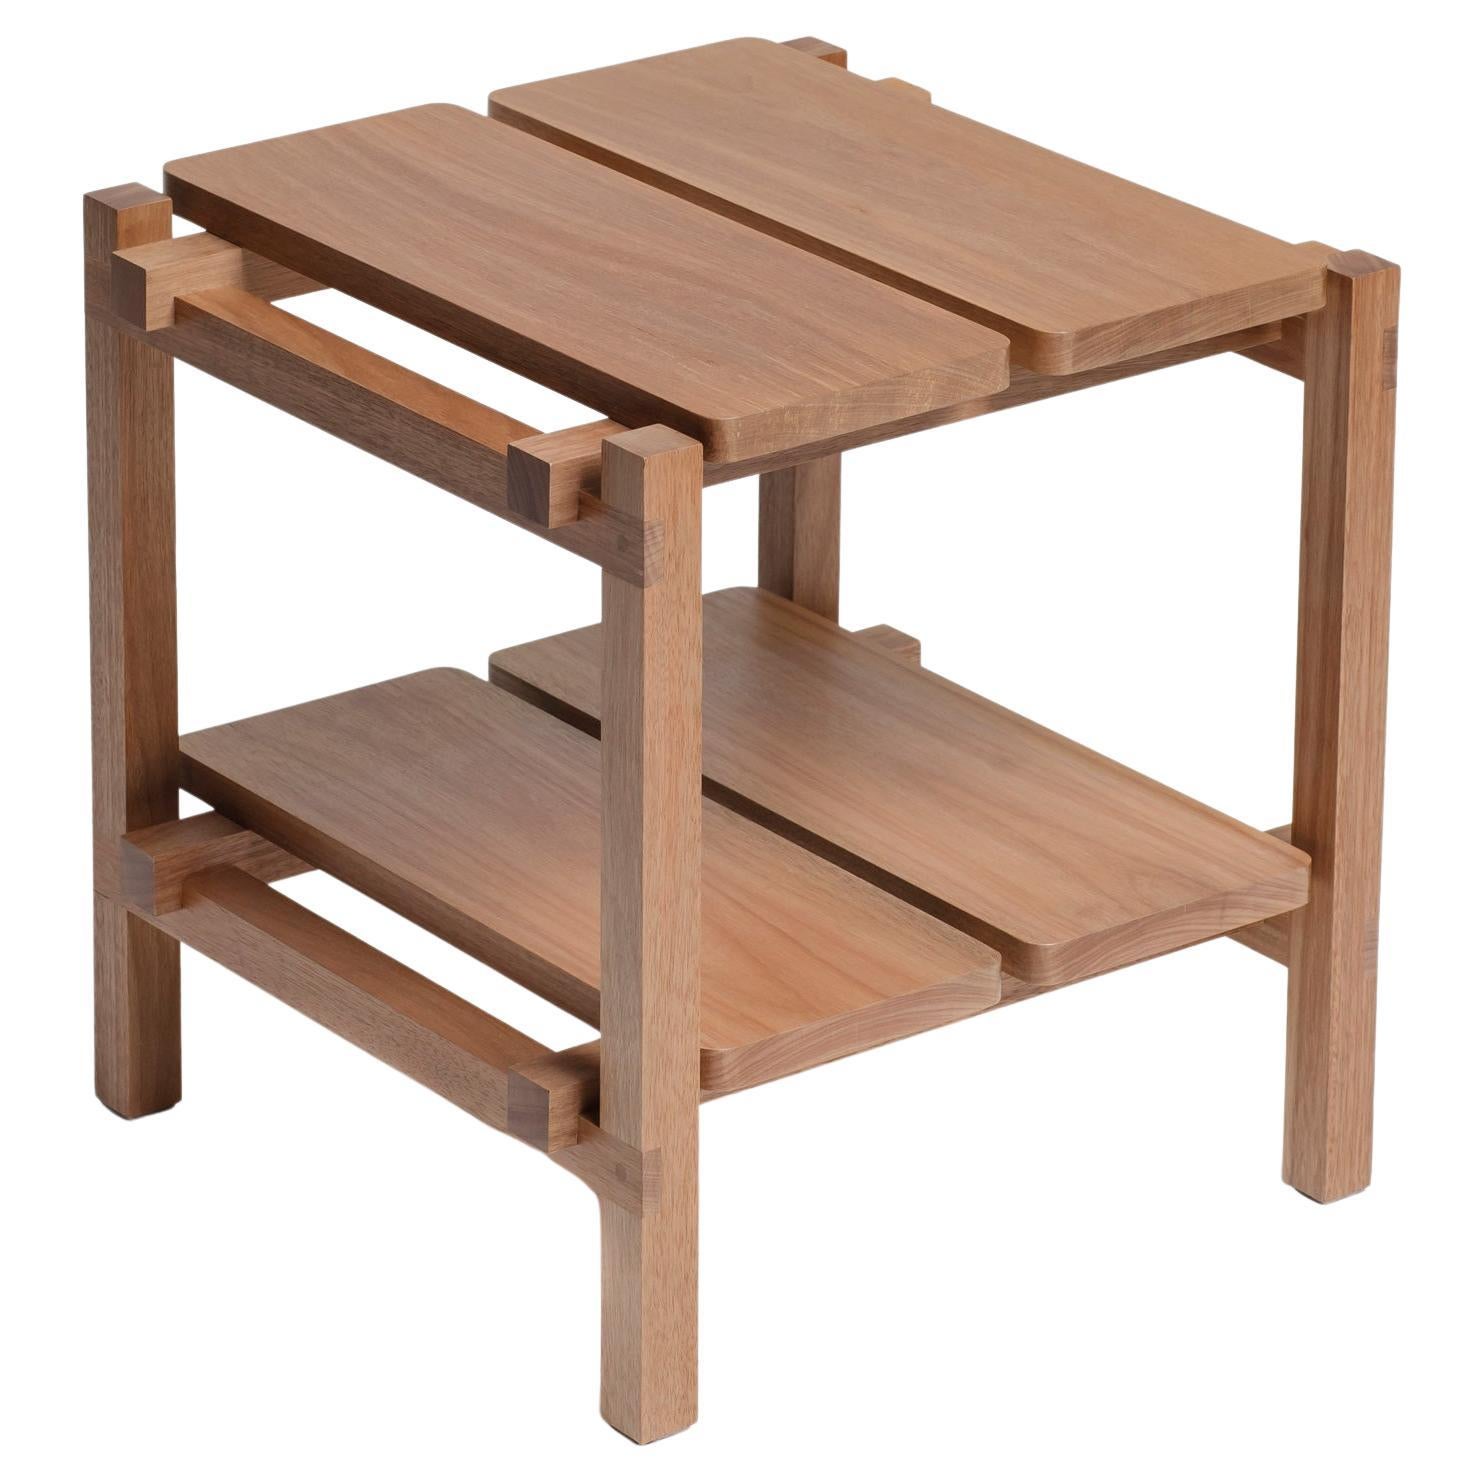 Table d'appoint conçue pour remplir deux fonctions : support et assise. Il peut servir de table d'appoint, de table de chevet ou de banc, lorsque les invités ne tiennent plus sur le canapé. La table A&M est fabriquée dans notre propre atelier à São